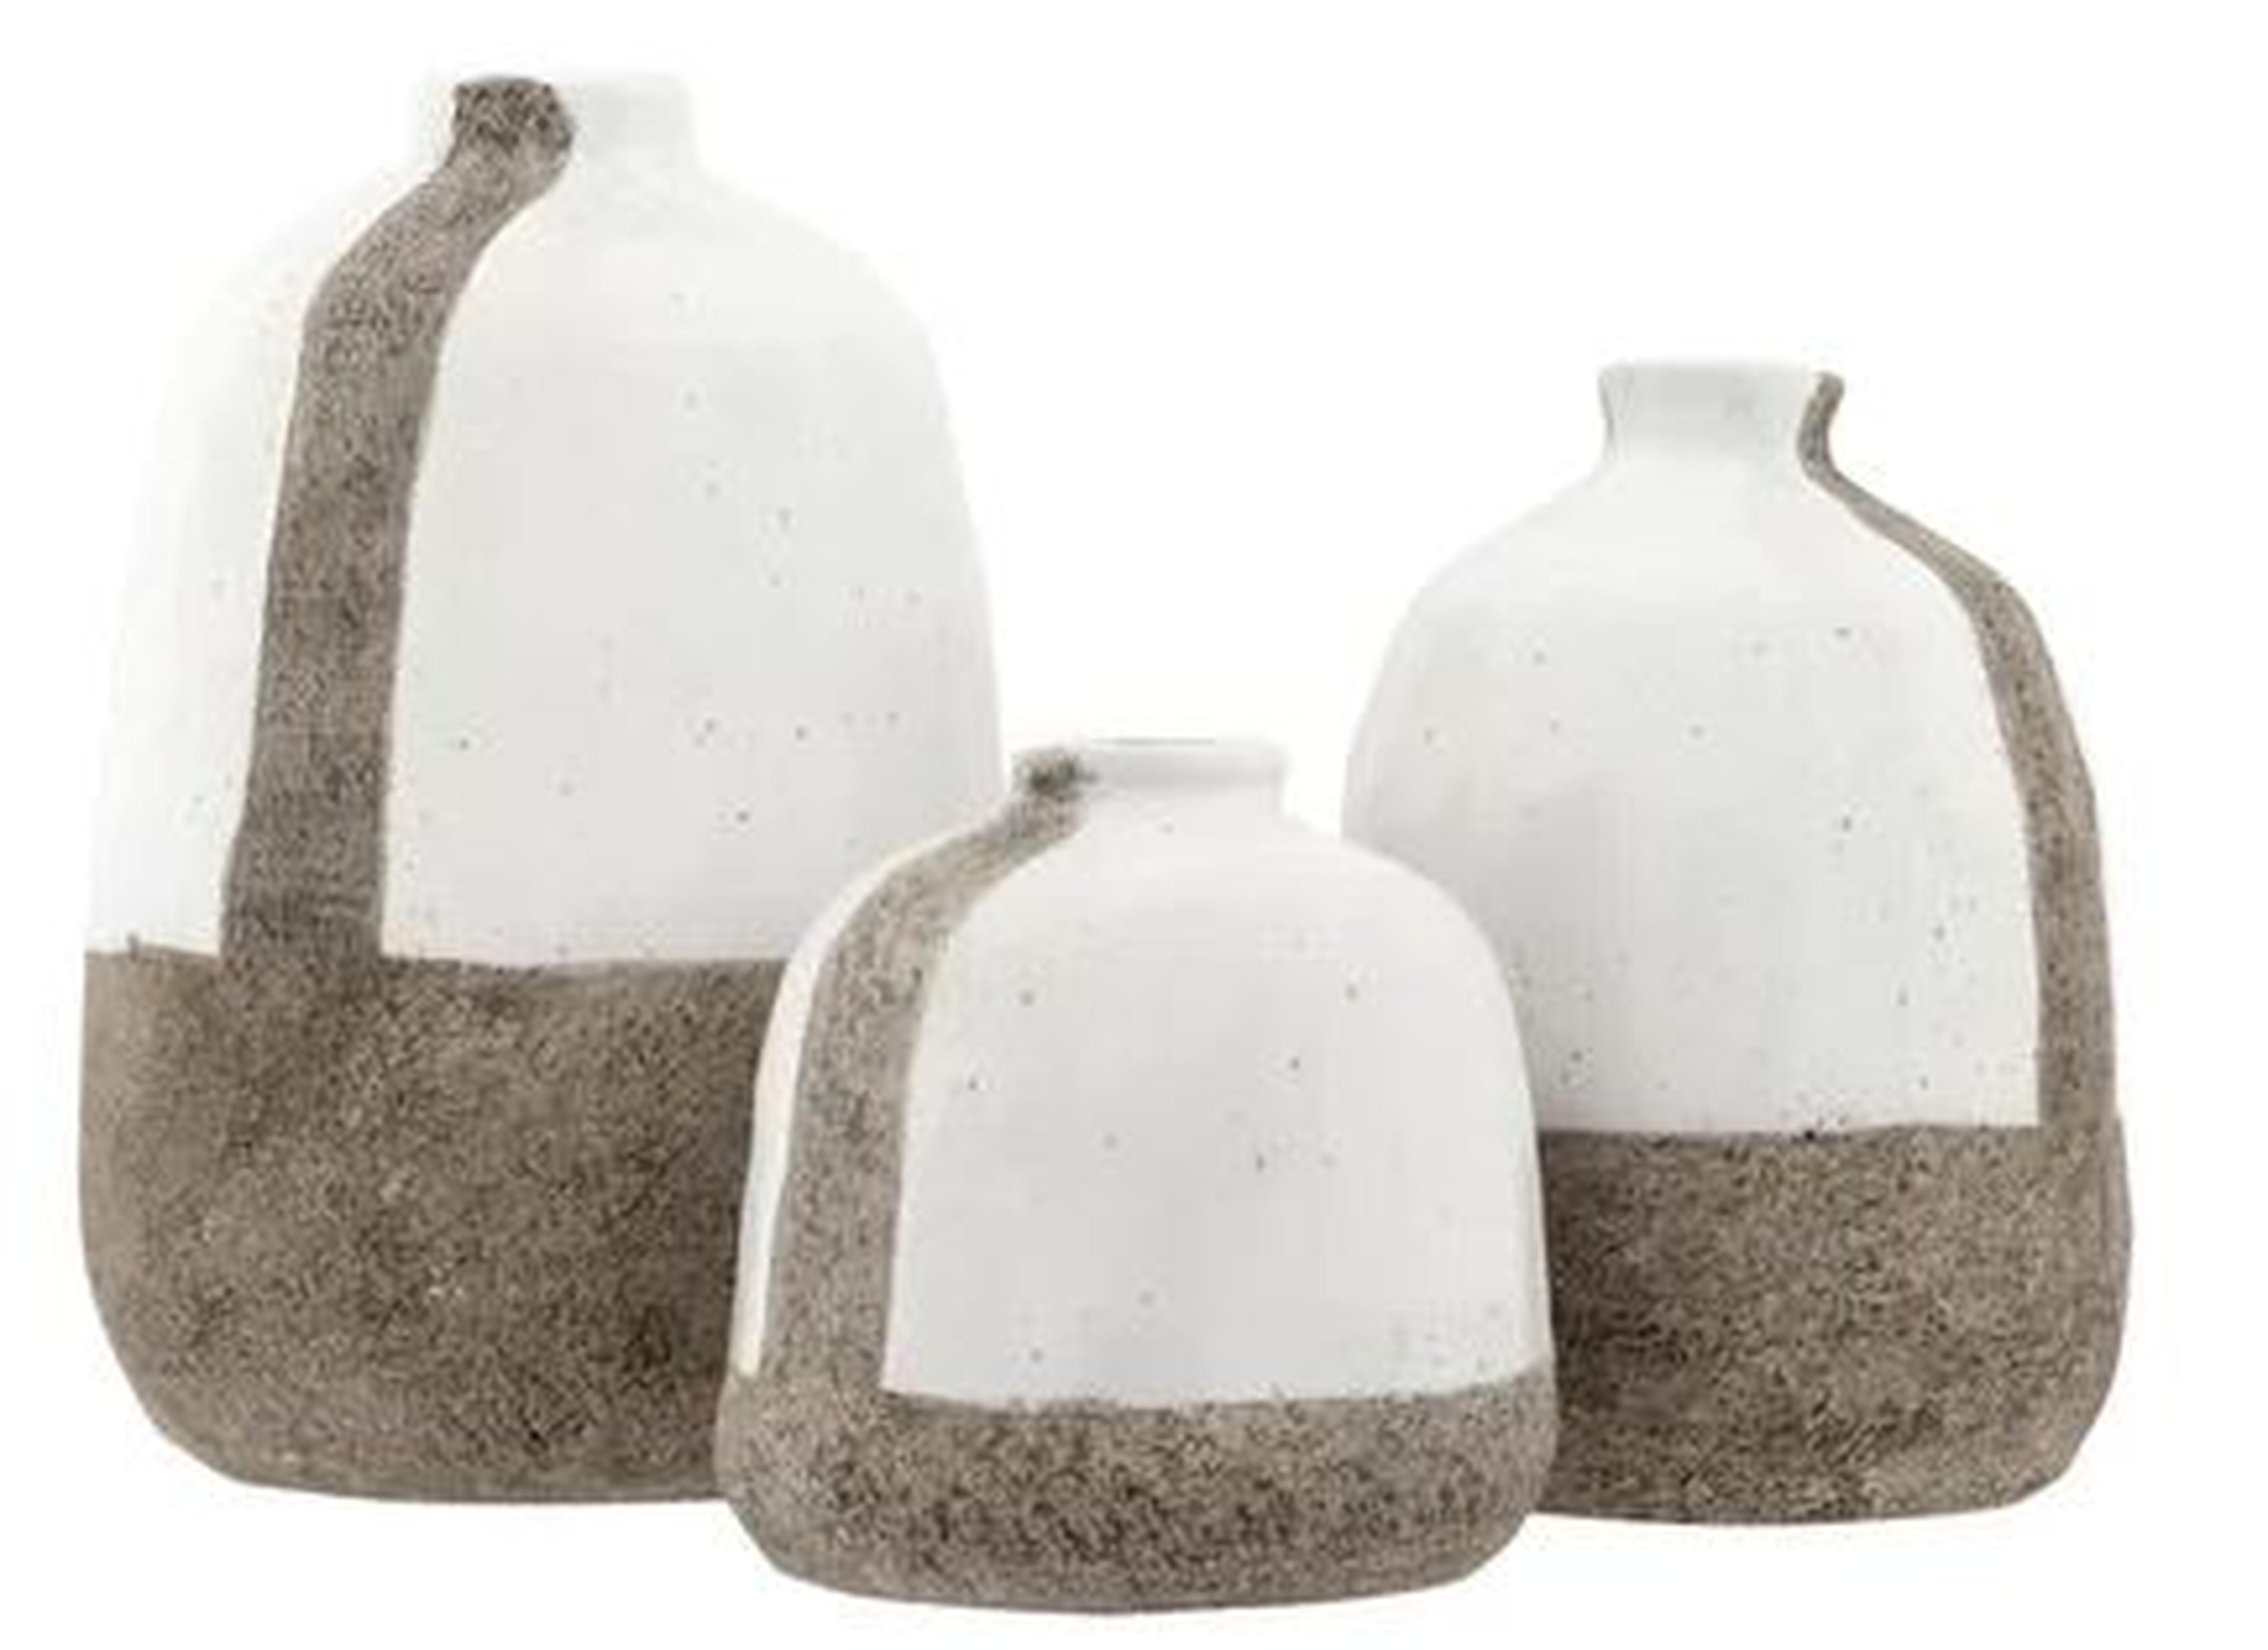 Keiser Terracotta Table Vase - Wayfair